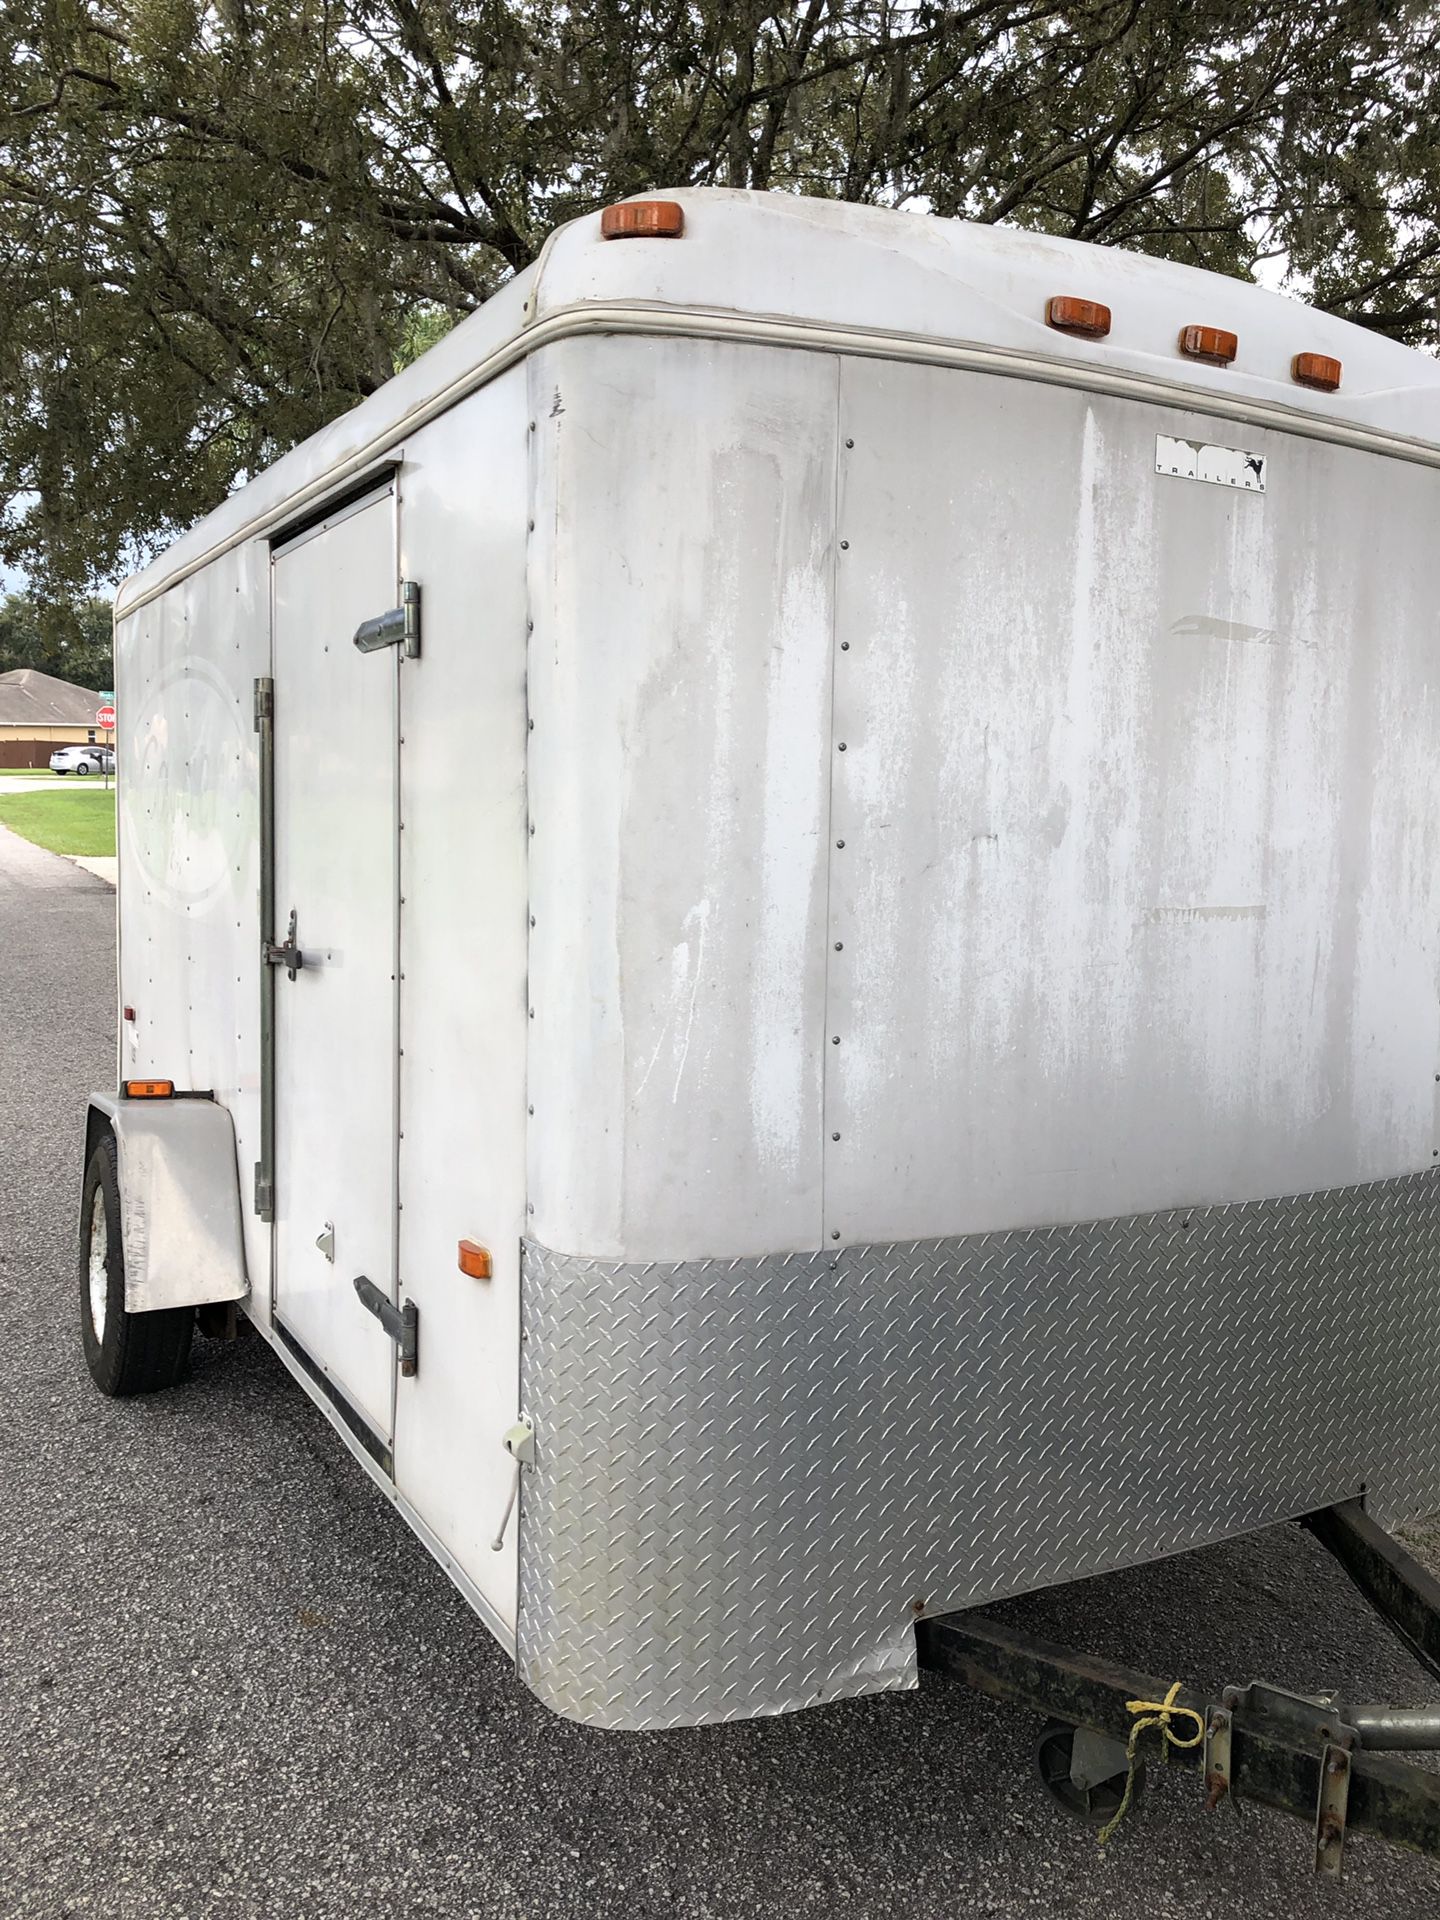 2003 6 x 12 enclosed cargo trailer with rear ramp door